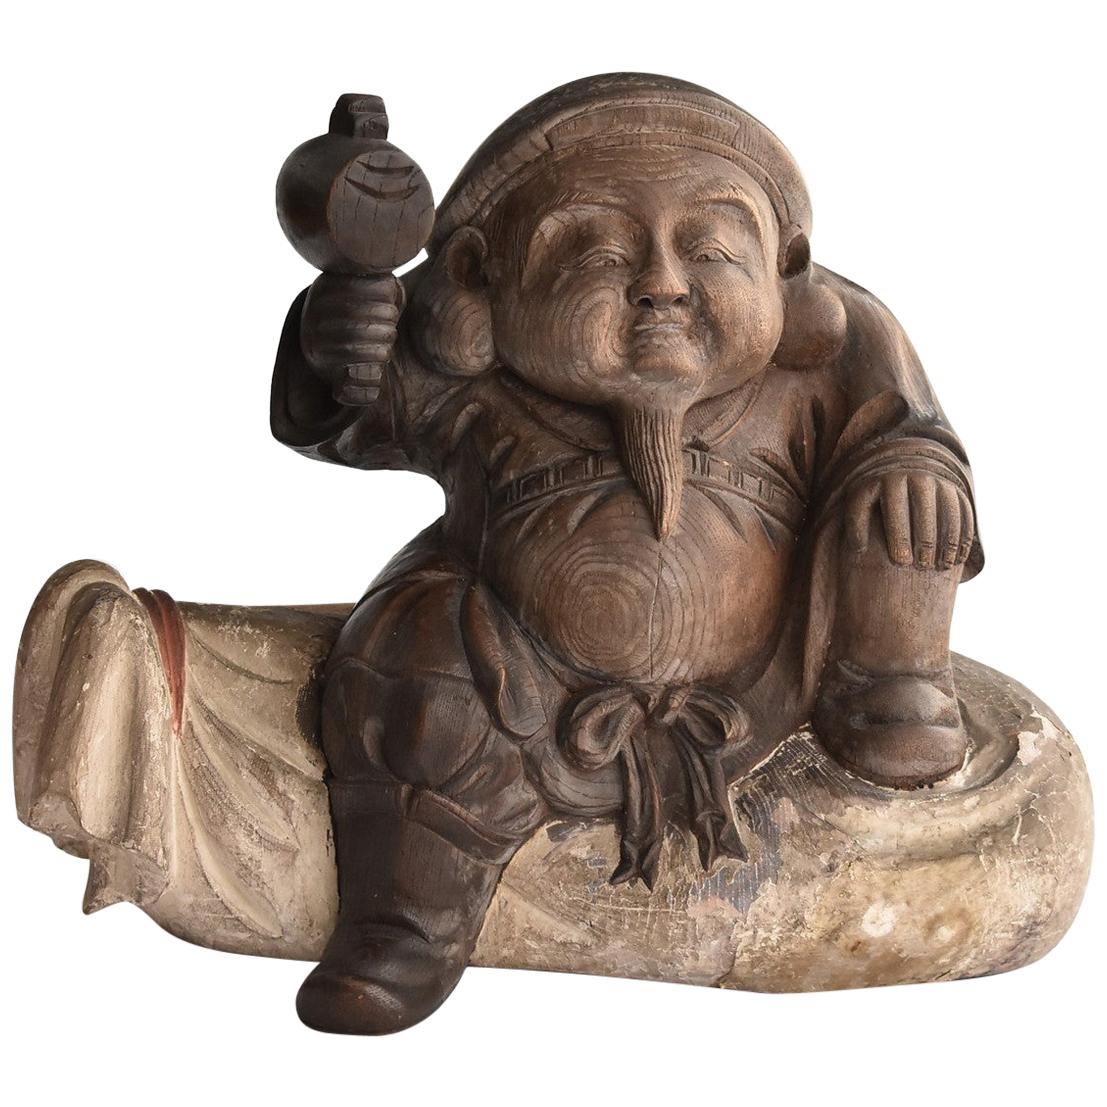 Old Japanese wooden Buddha Statue / Daikokuten 'Seven Lucky Gods' / Wood Carving